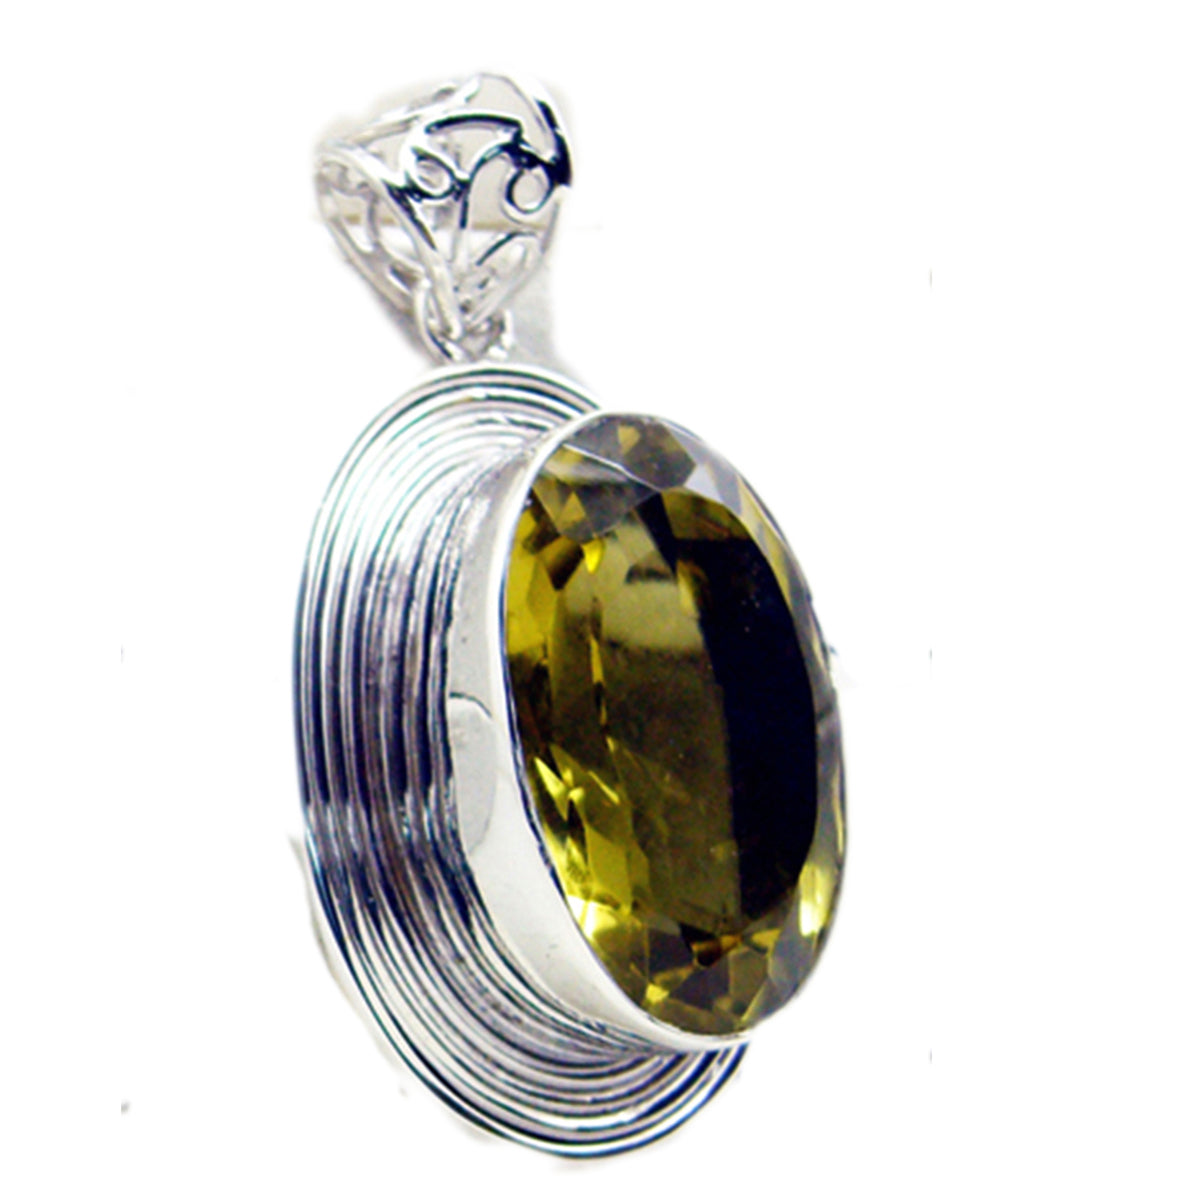 Riyo comely gems ovale à facettes jaune citron quartz pendentif en argent cadeau pour sœur